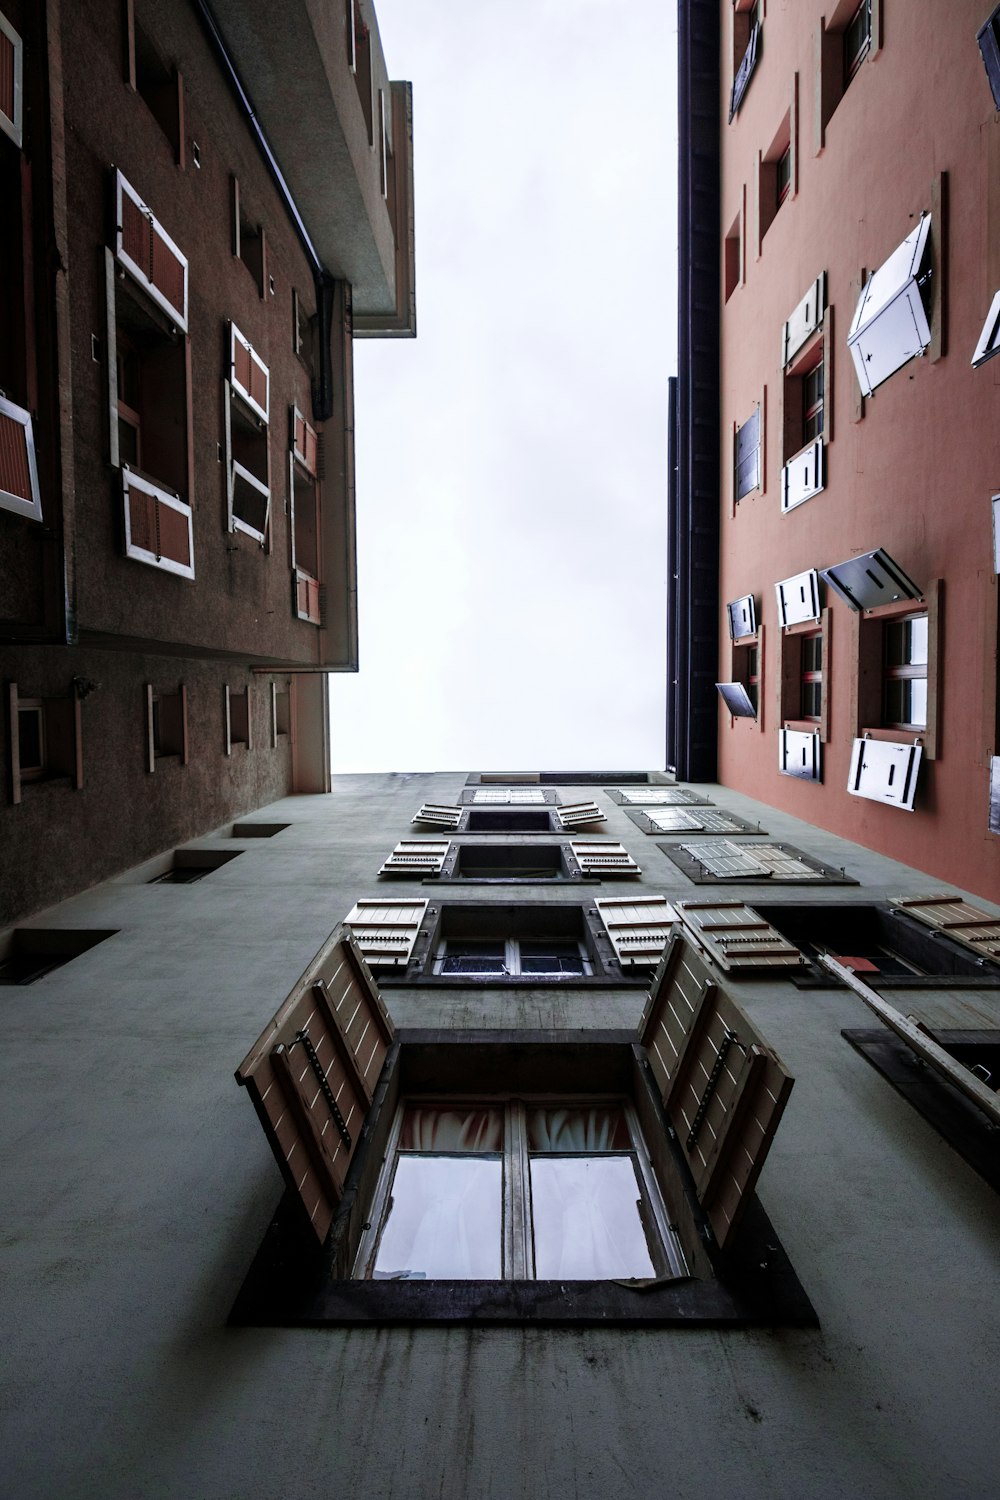 Photographie en contre-plongée d’un bâtiment avec des fenêtres ouvertes pendant la journée